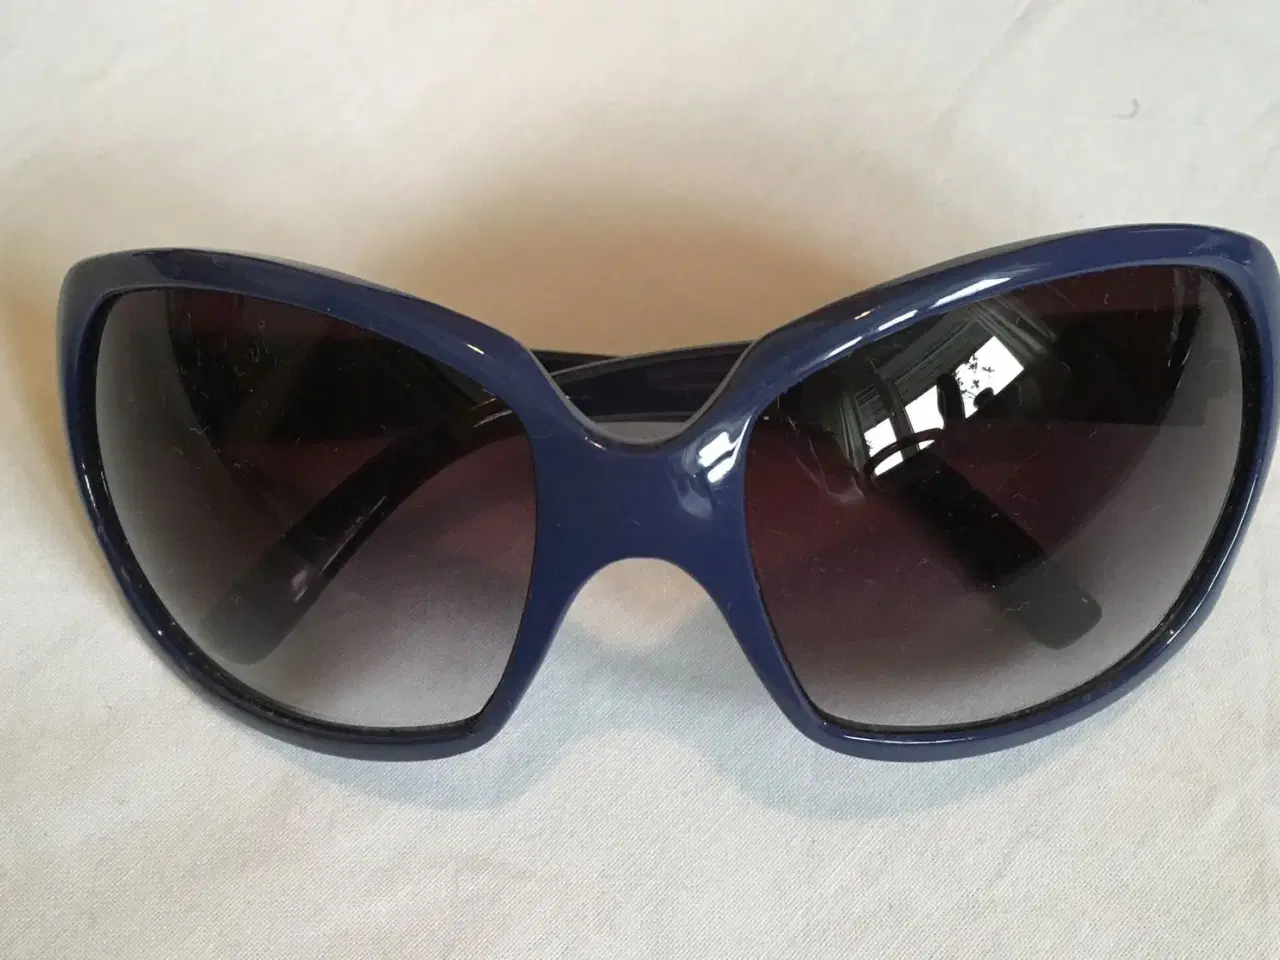 Billede 8 - Diverse solbriller til salg